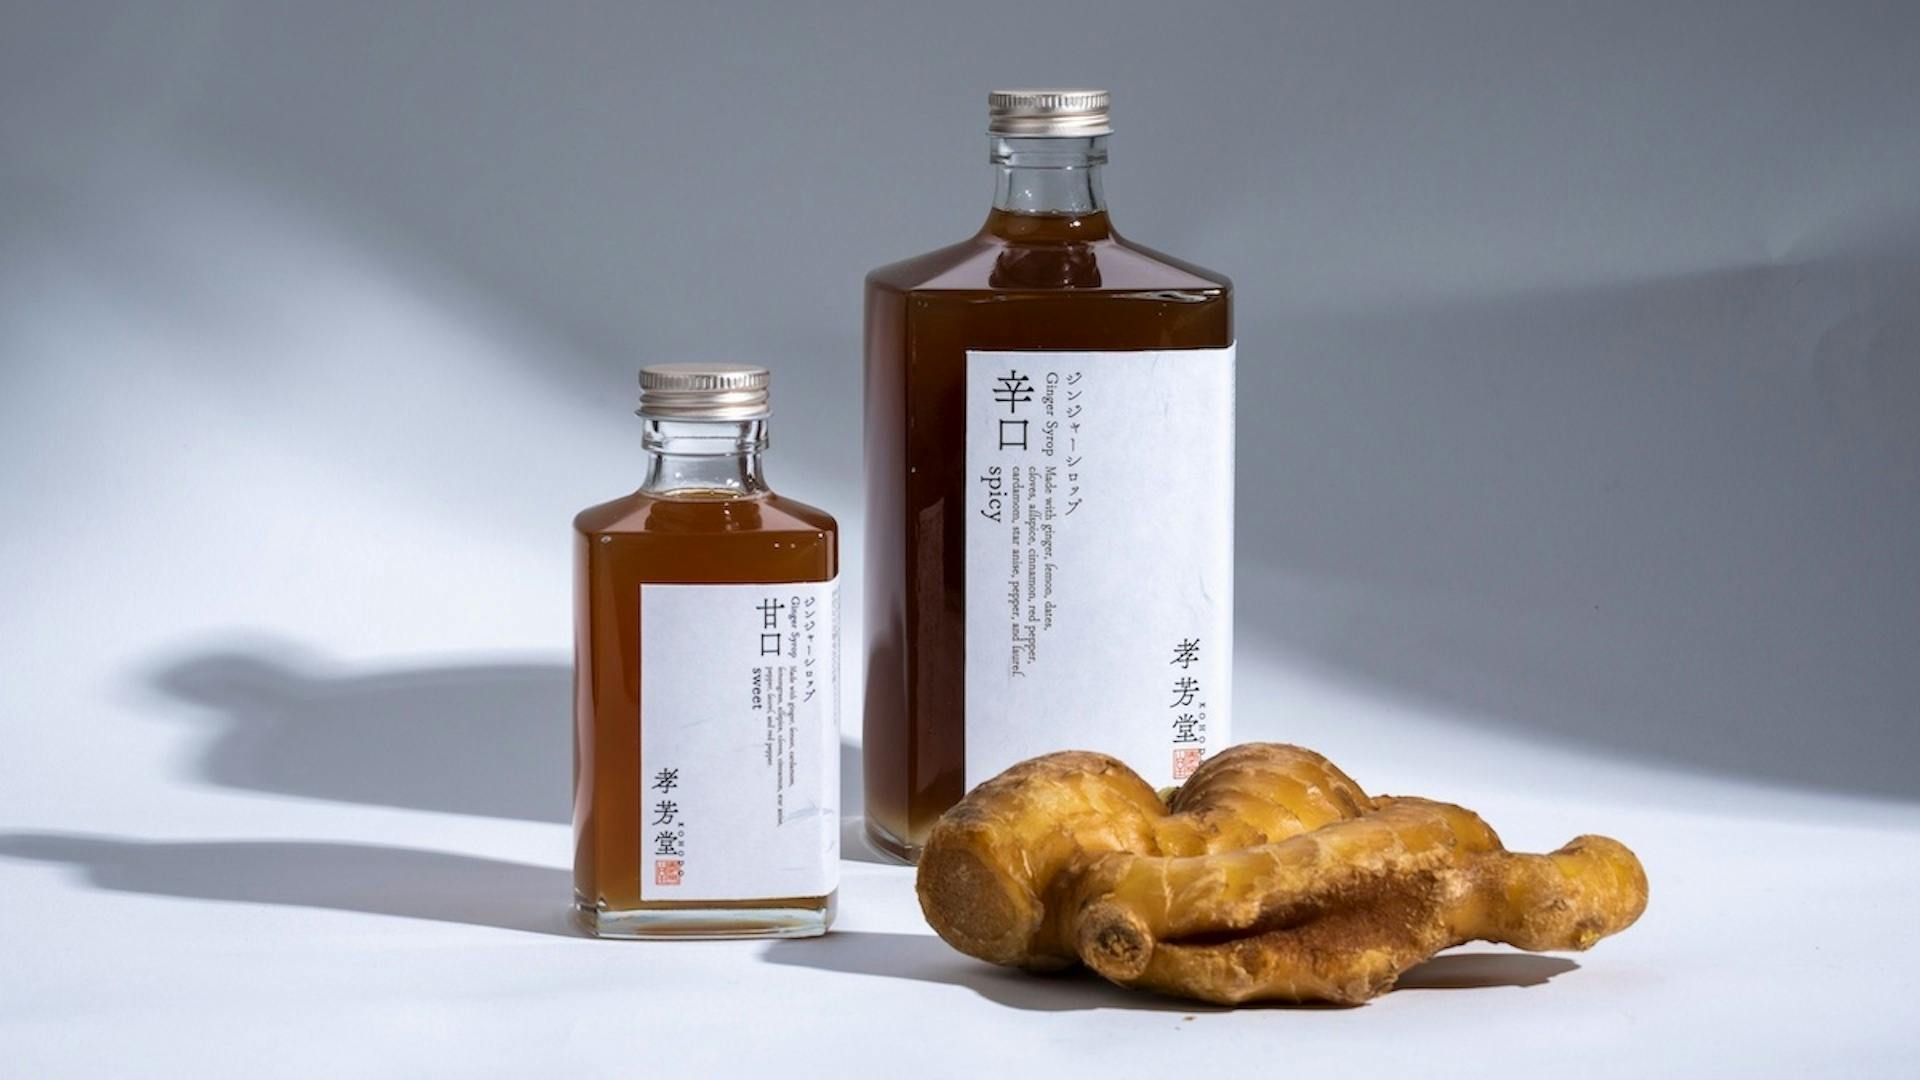 特価ブランド 軽食品 北海道産生姜のジンジャーエール 炭酸飲料